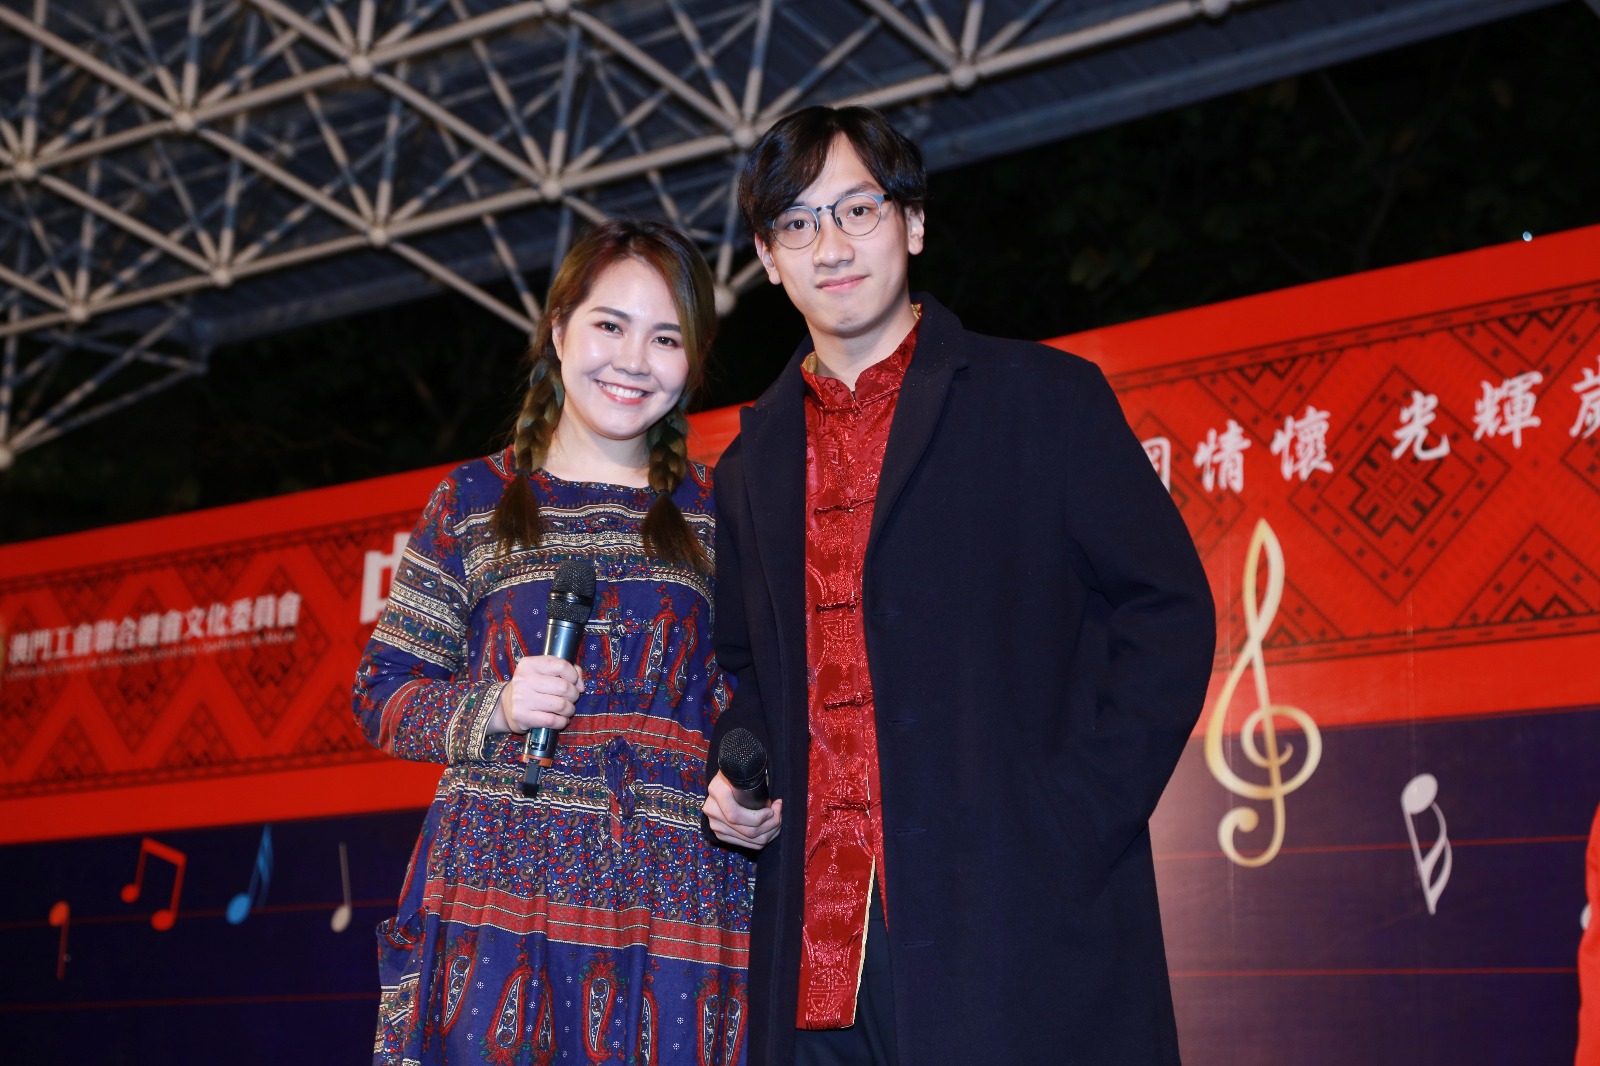 周啓陽 Elvis Chao之司儀主持紀錄: 2017中國民族歌曲歌唱大賽決賽